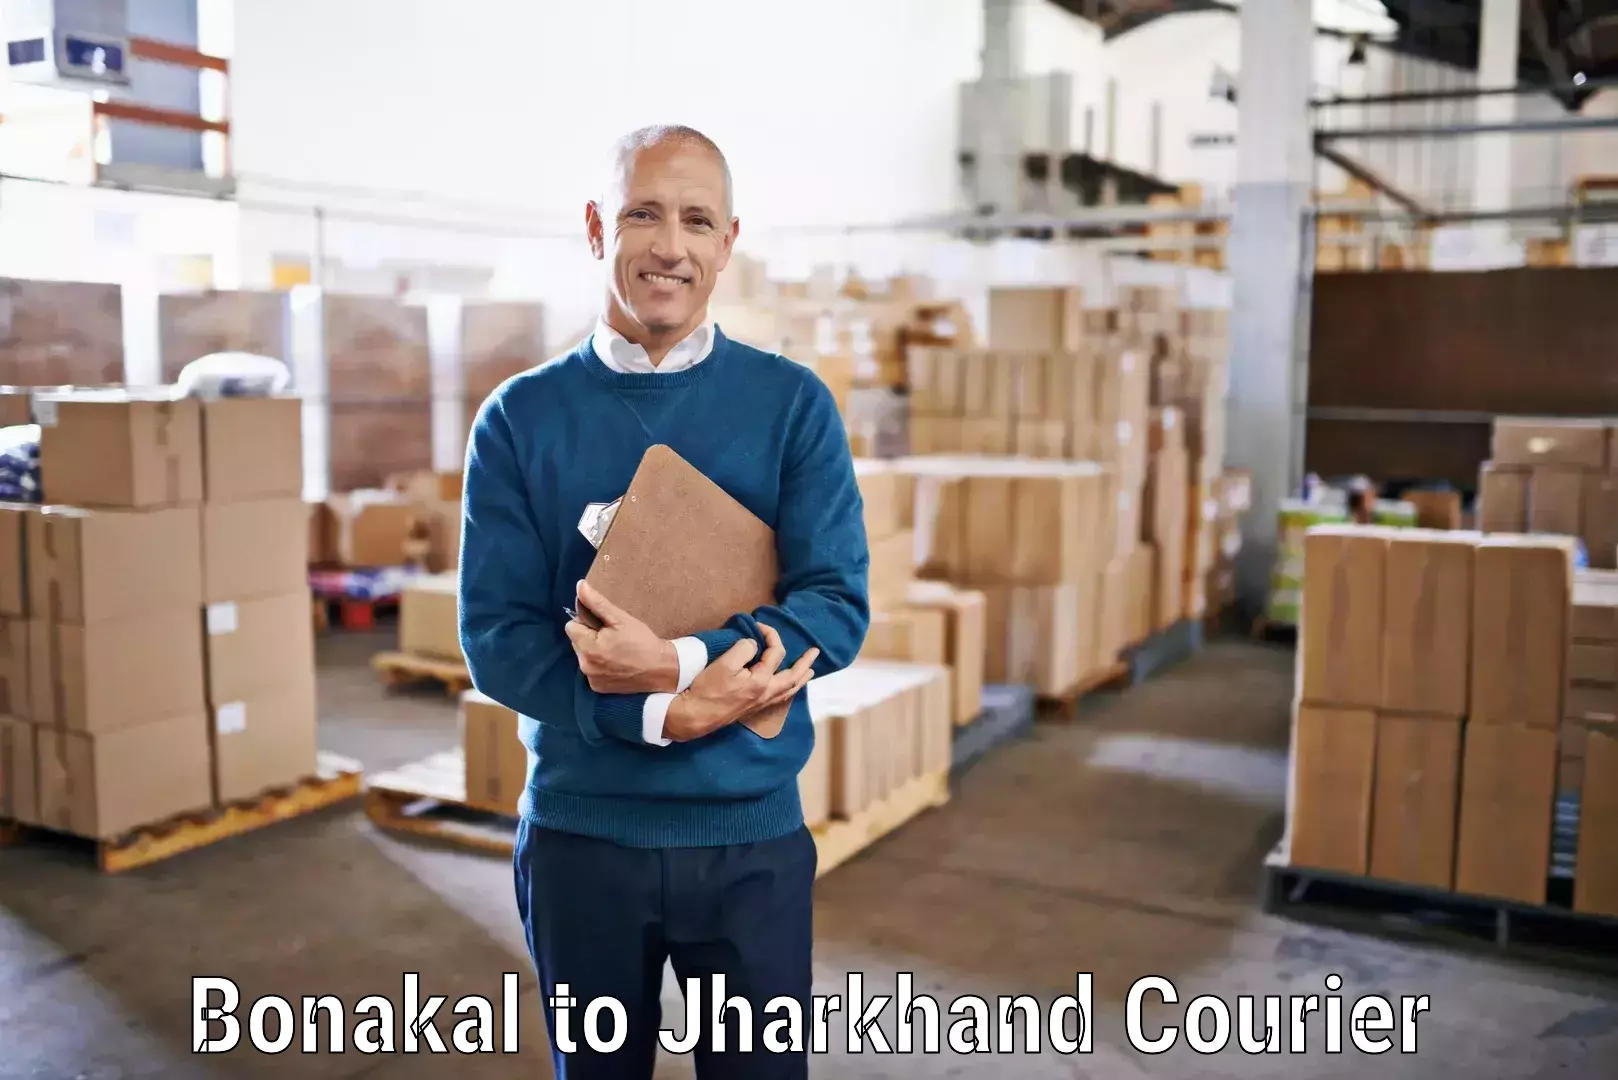 Secure shipping methods Bonakal to Godabar Chatra